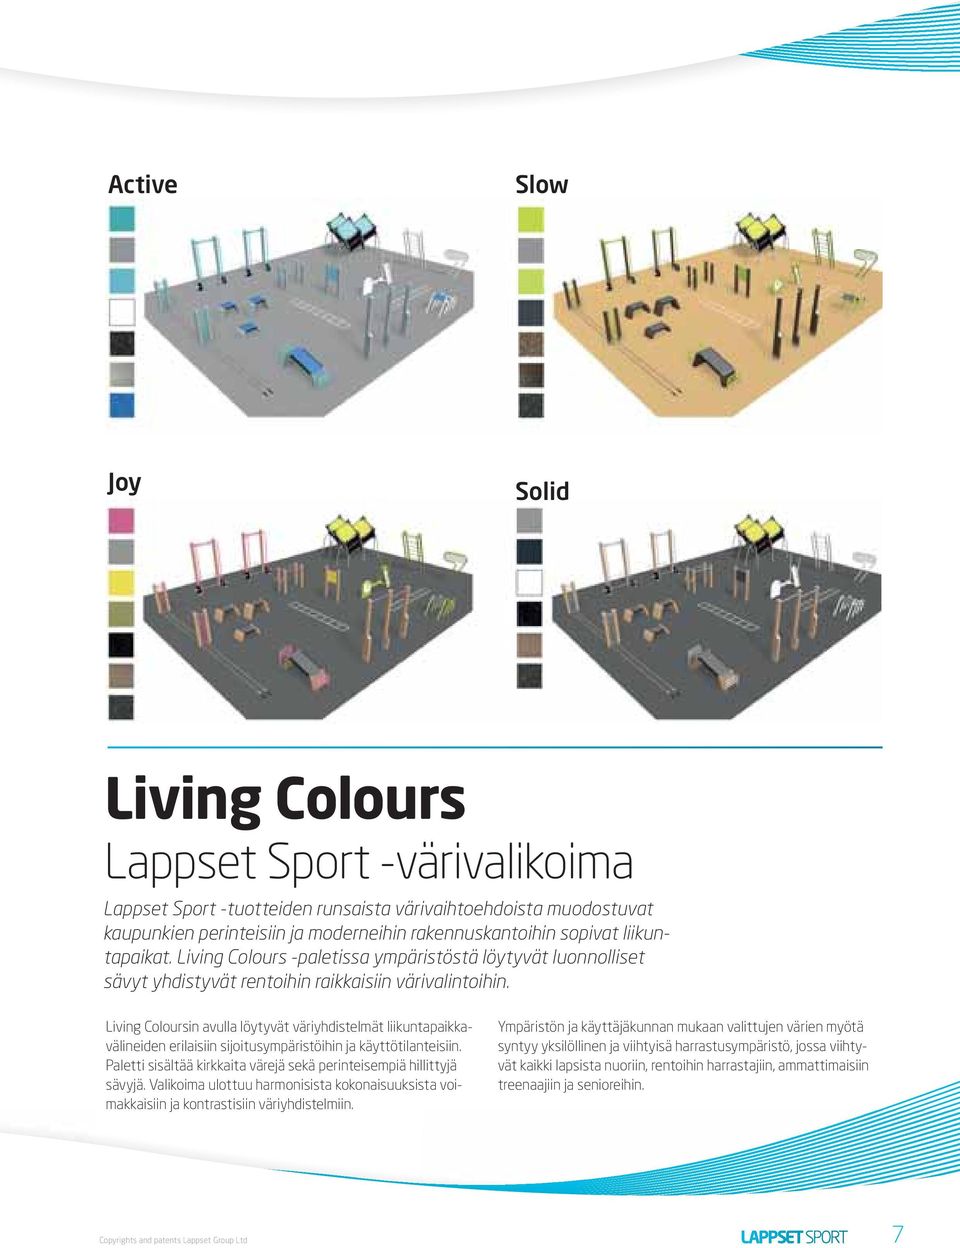 Living Coloursin avulla löytyvät väriyhdistelmät liikuntapaikkavälineiden erilaisiin sijoitusympäristöihin ja käyttötilanteisiin.